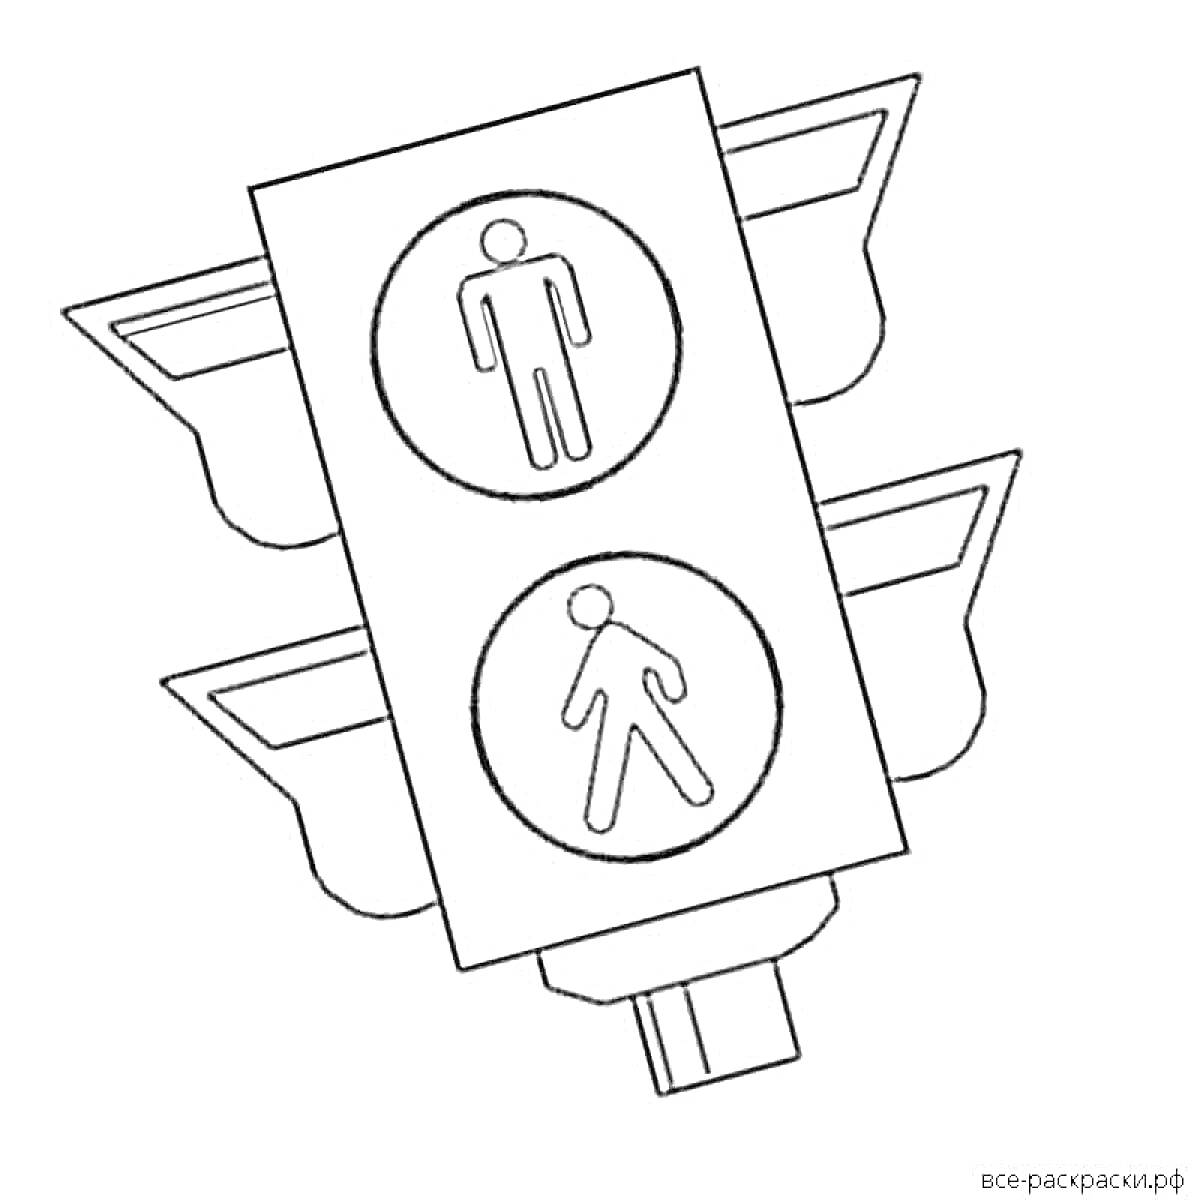 Раскраска Светофор с сигналами для пешеходов, верхний сигнал - стоящий человек, нижний сигнал - идущий человек.